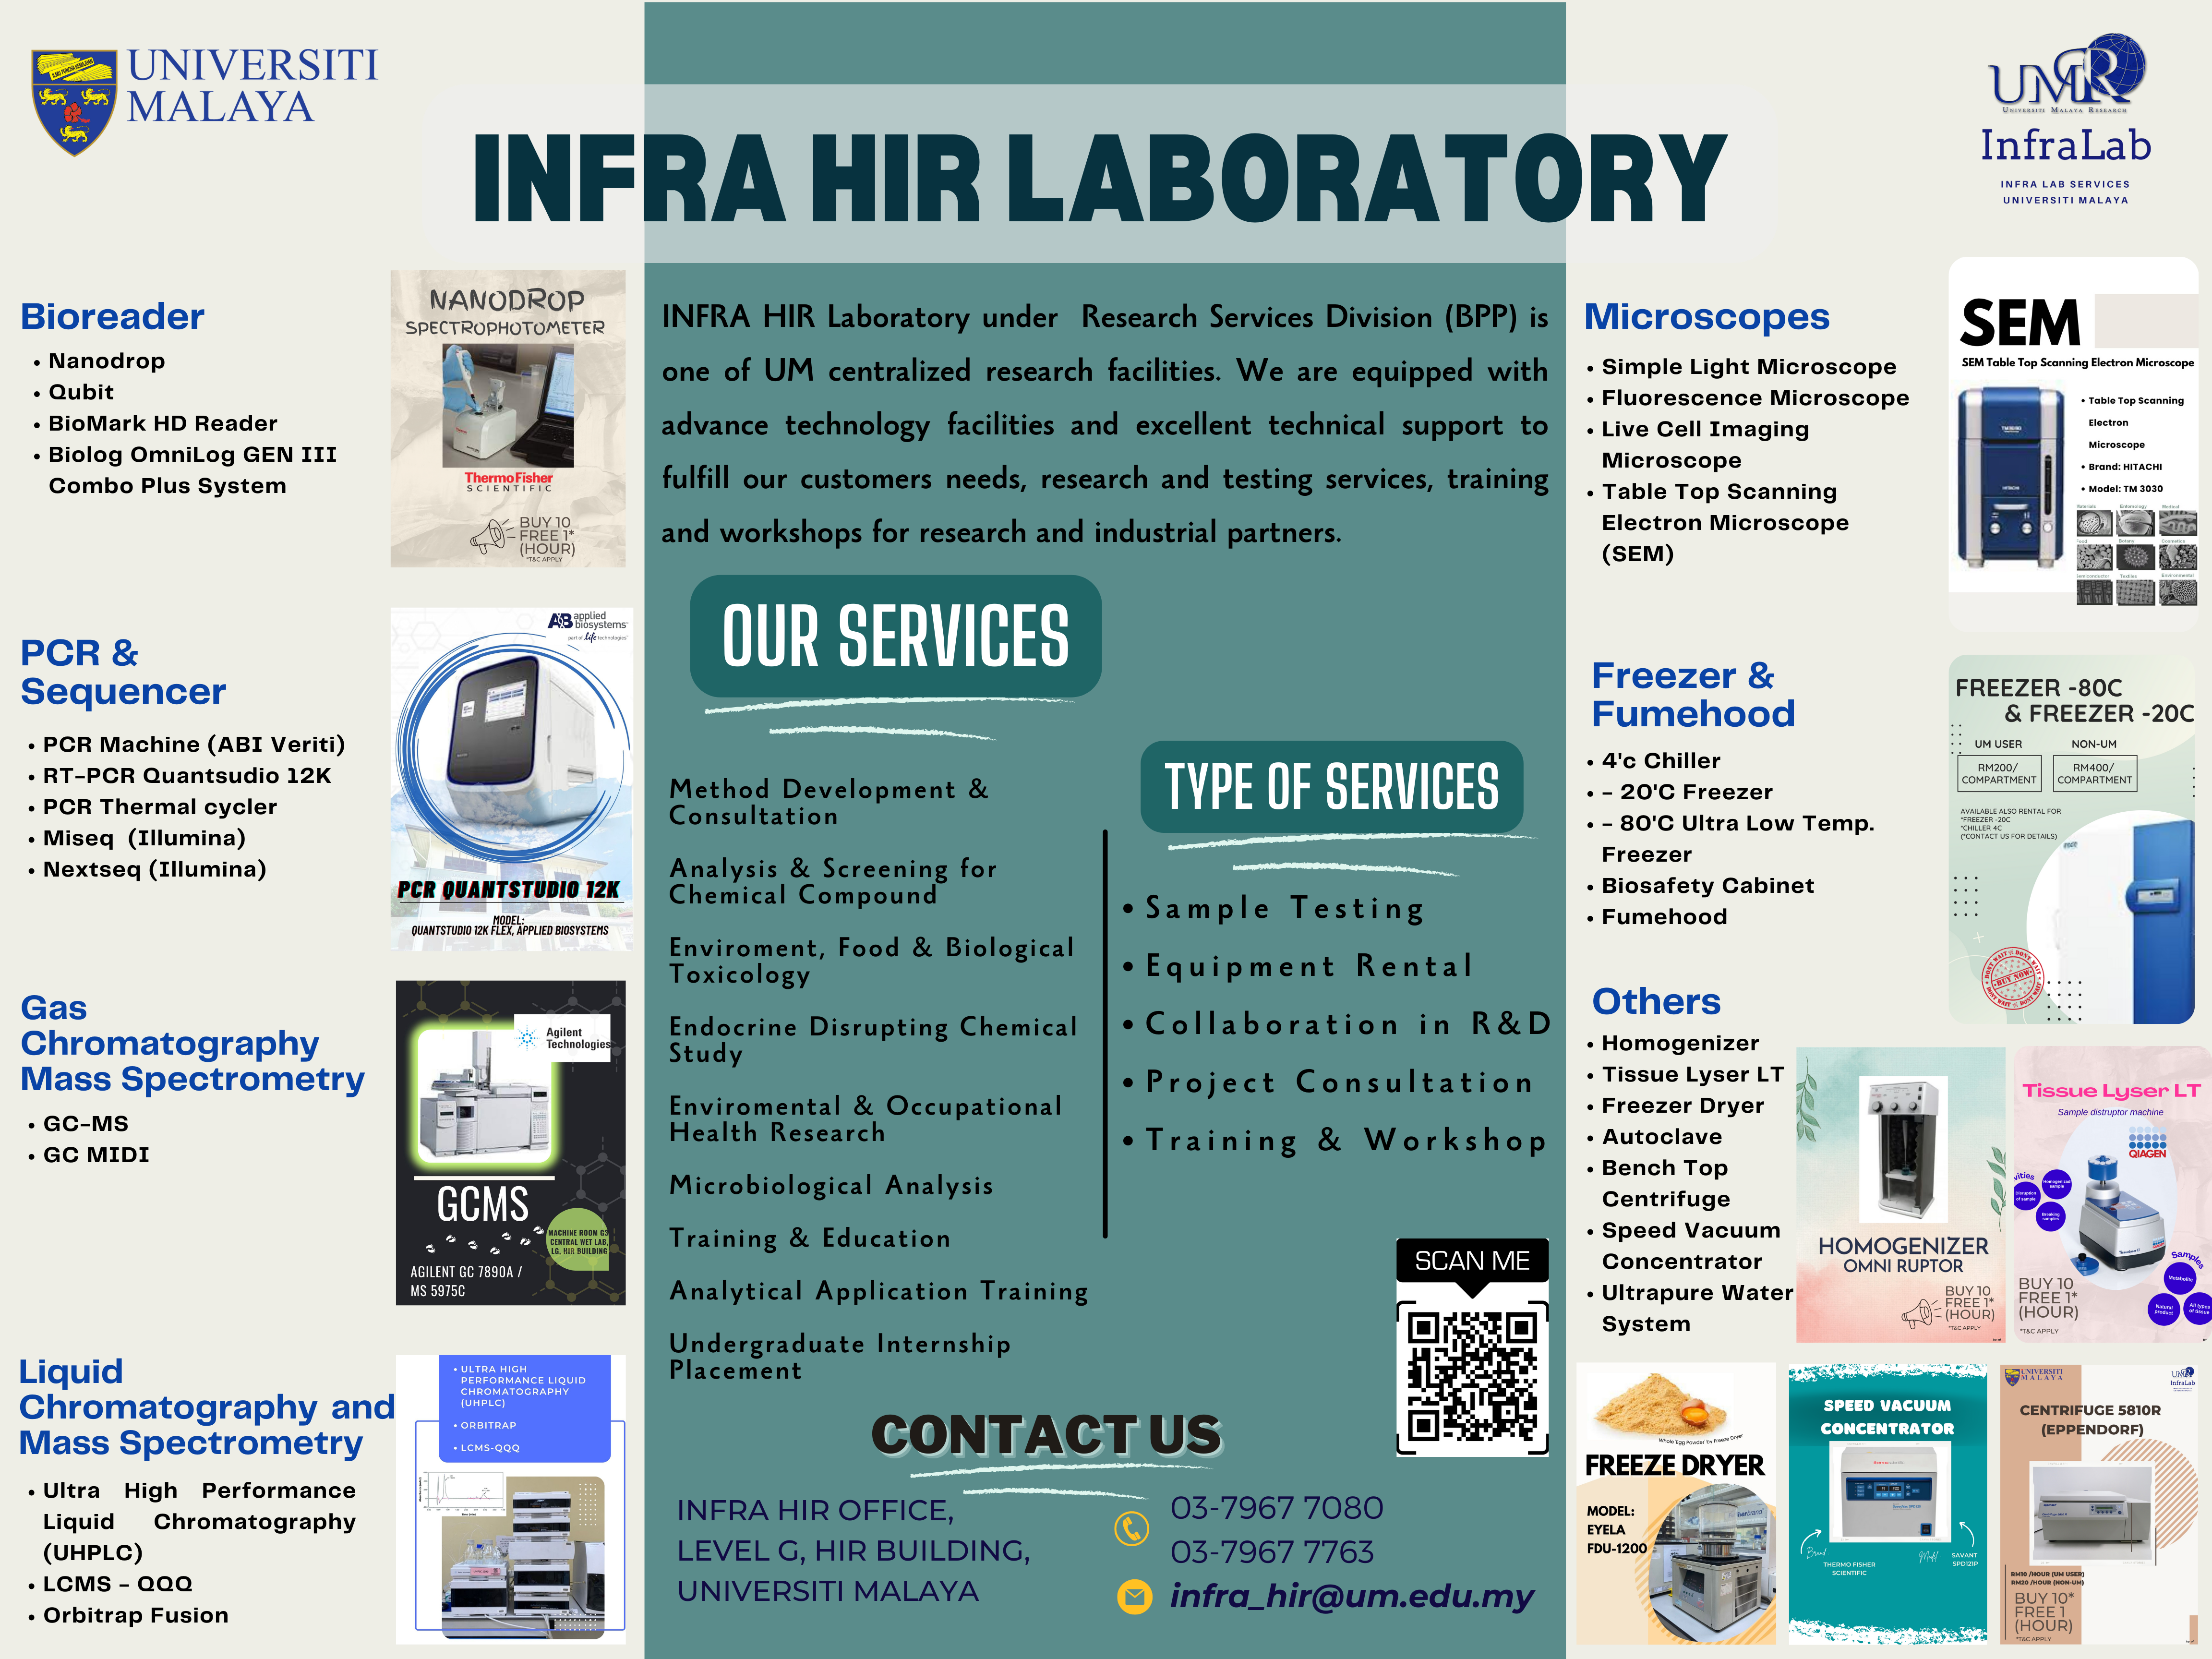 Equipment Rental Service_INFRA@HIR 2